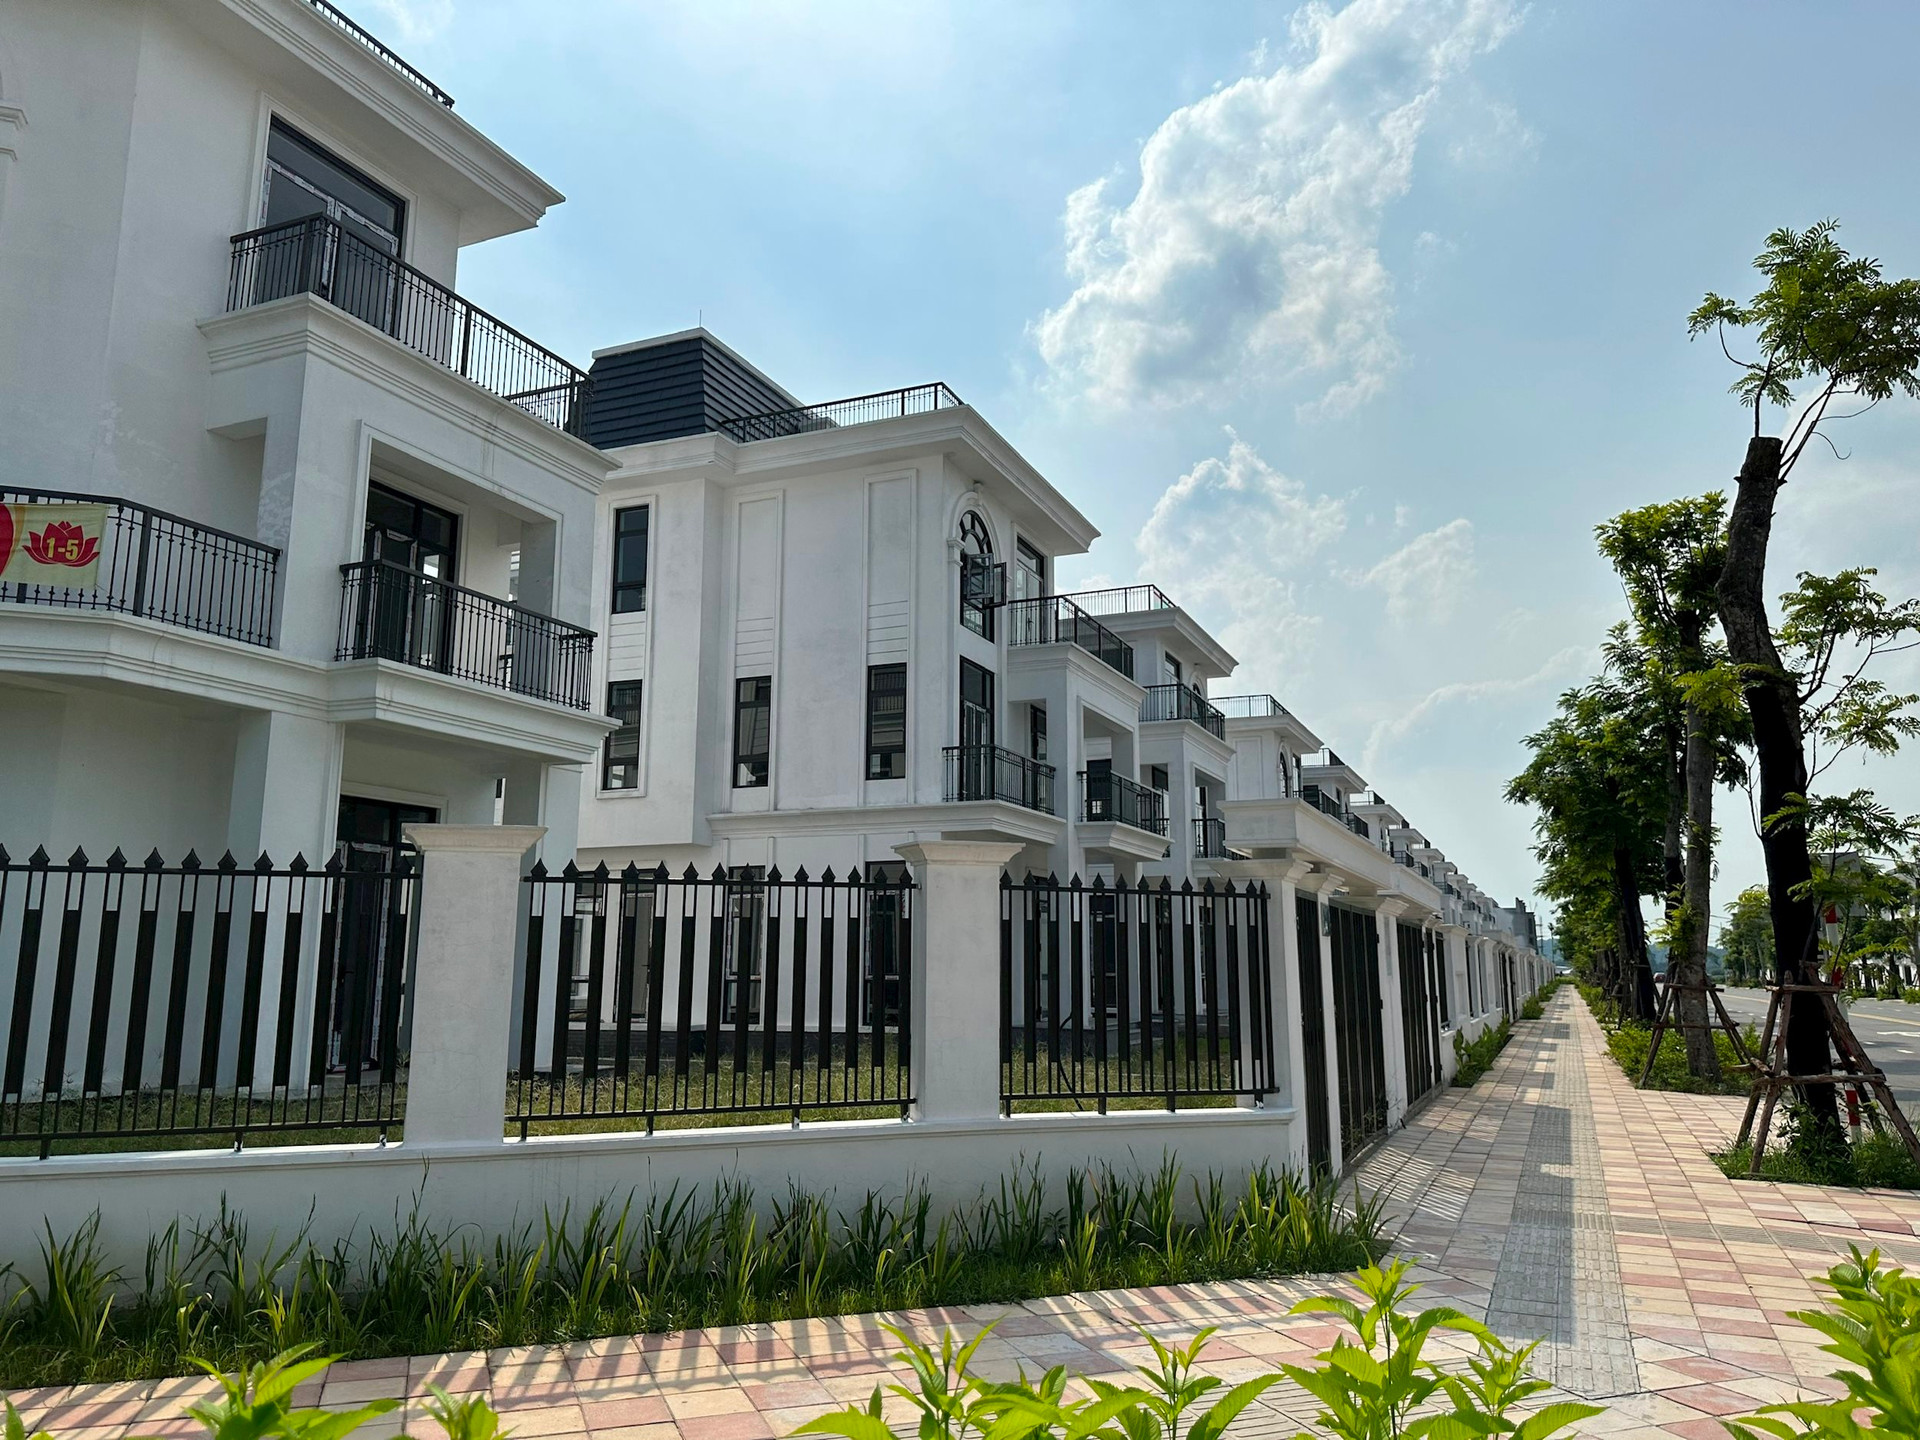 Một dự án bất động sản tại Hà Nội từng gây xôn xao khi mở bán trả giá công khai, nay giá thấp hơn gần 20%, môi giới chào mời: “Sẽ tăng gấp 2 lần trong 3 năm” - Ảnh 1.